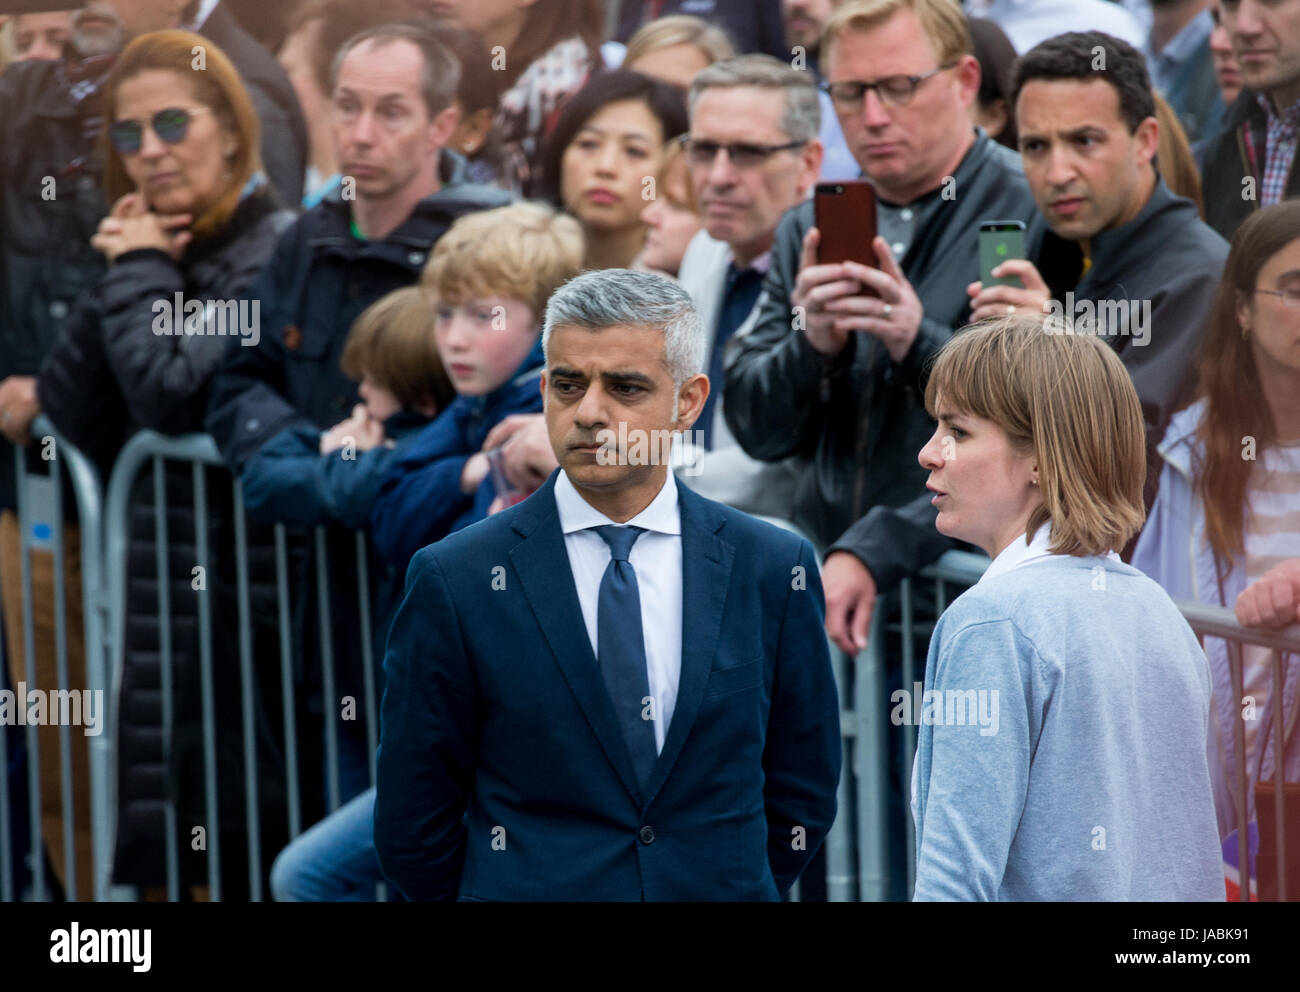 Londres, Royaume-Uni. 5 juin, 2017. La manifestation silencieuse devant l'Hôtel de Ville à la mémoire de ceux qui ont perdu leur vie et ont été blessés au cours des attaques à London Bridge. Banque D'Images